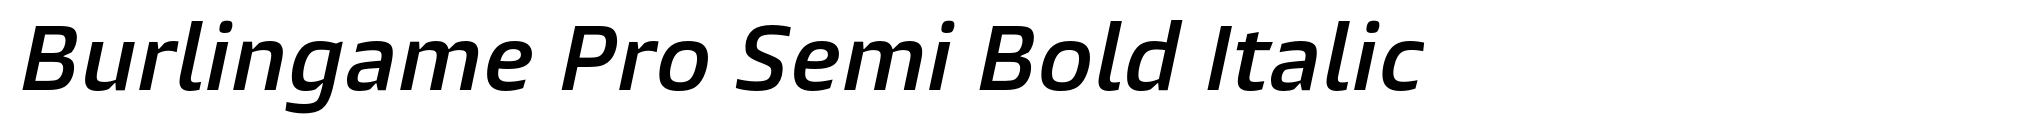 Burlingame Pro Semi Bold Italic image